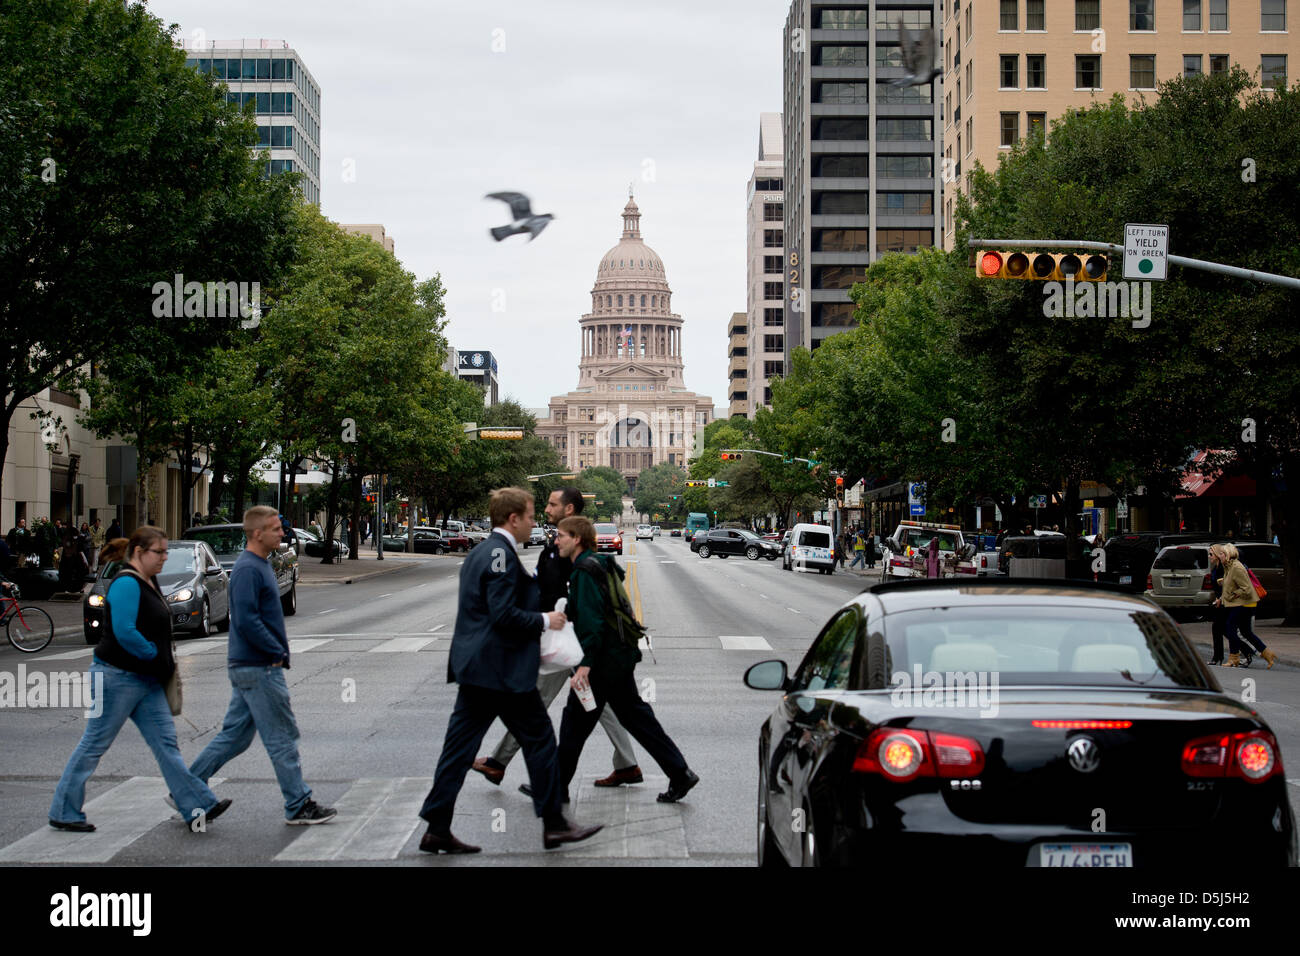 Fußgänger überqueren Sie die Straße vor dem Texas State Capitol in Austin, Texas, USA, 13. November 2012. Die Formel 1 United States Grand Prix statt findet am 18. November 2012. Foto: David Ebener dpa Stockfoto